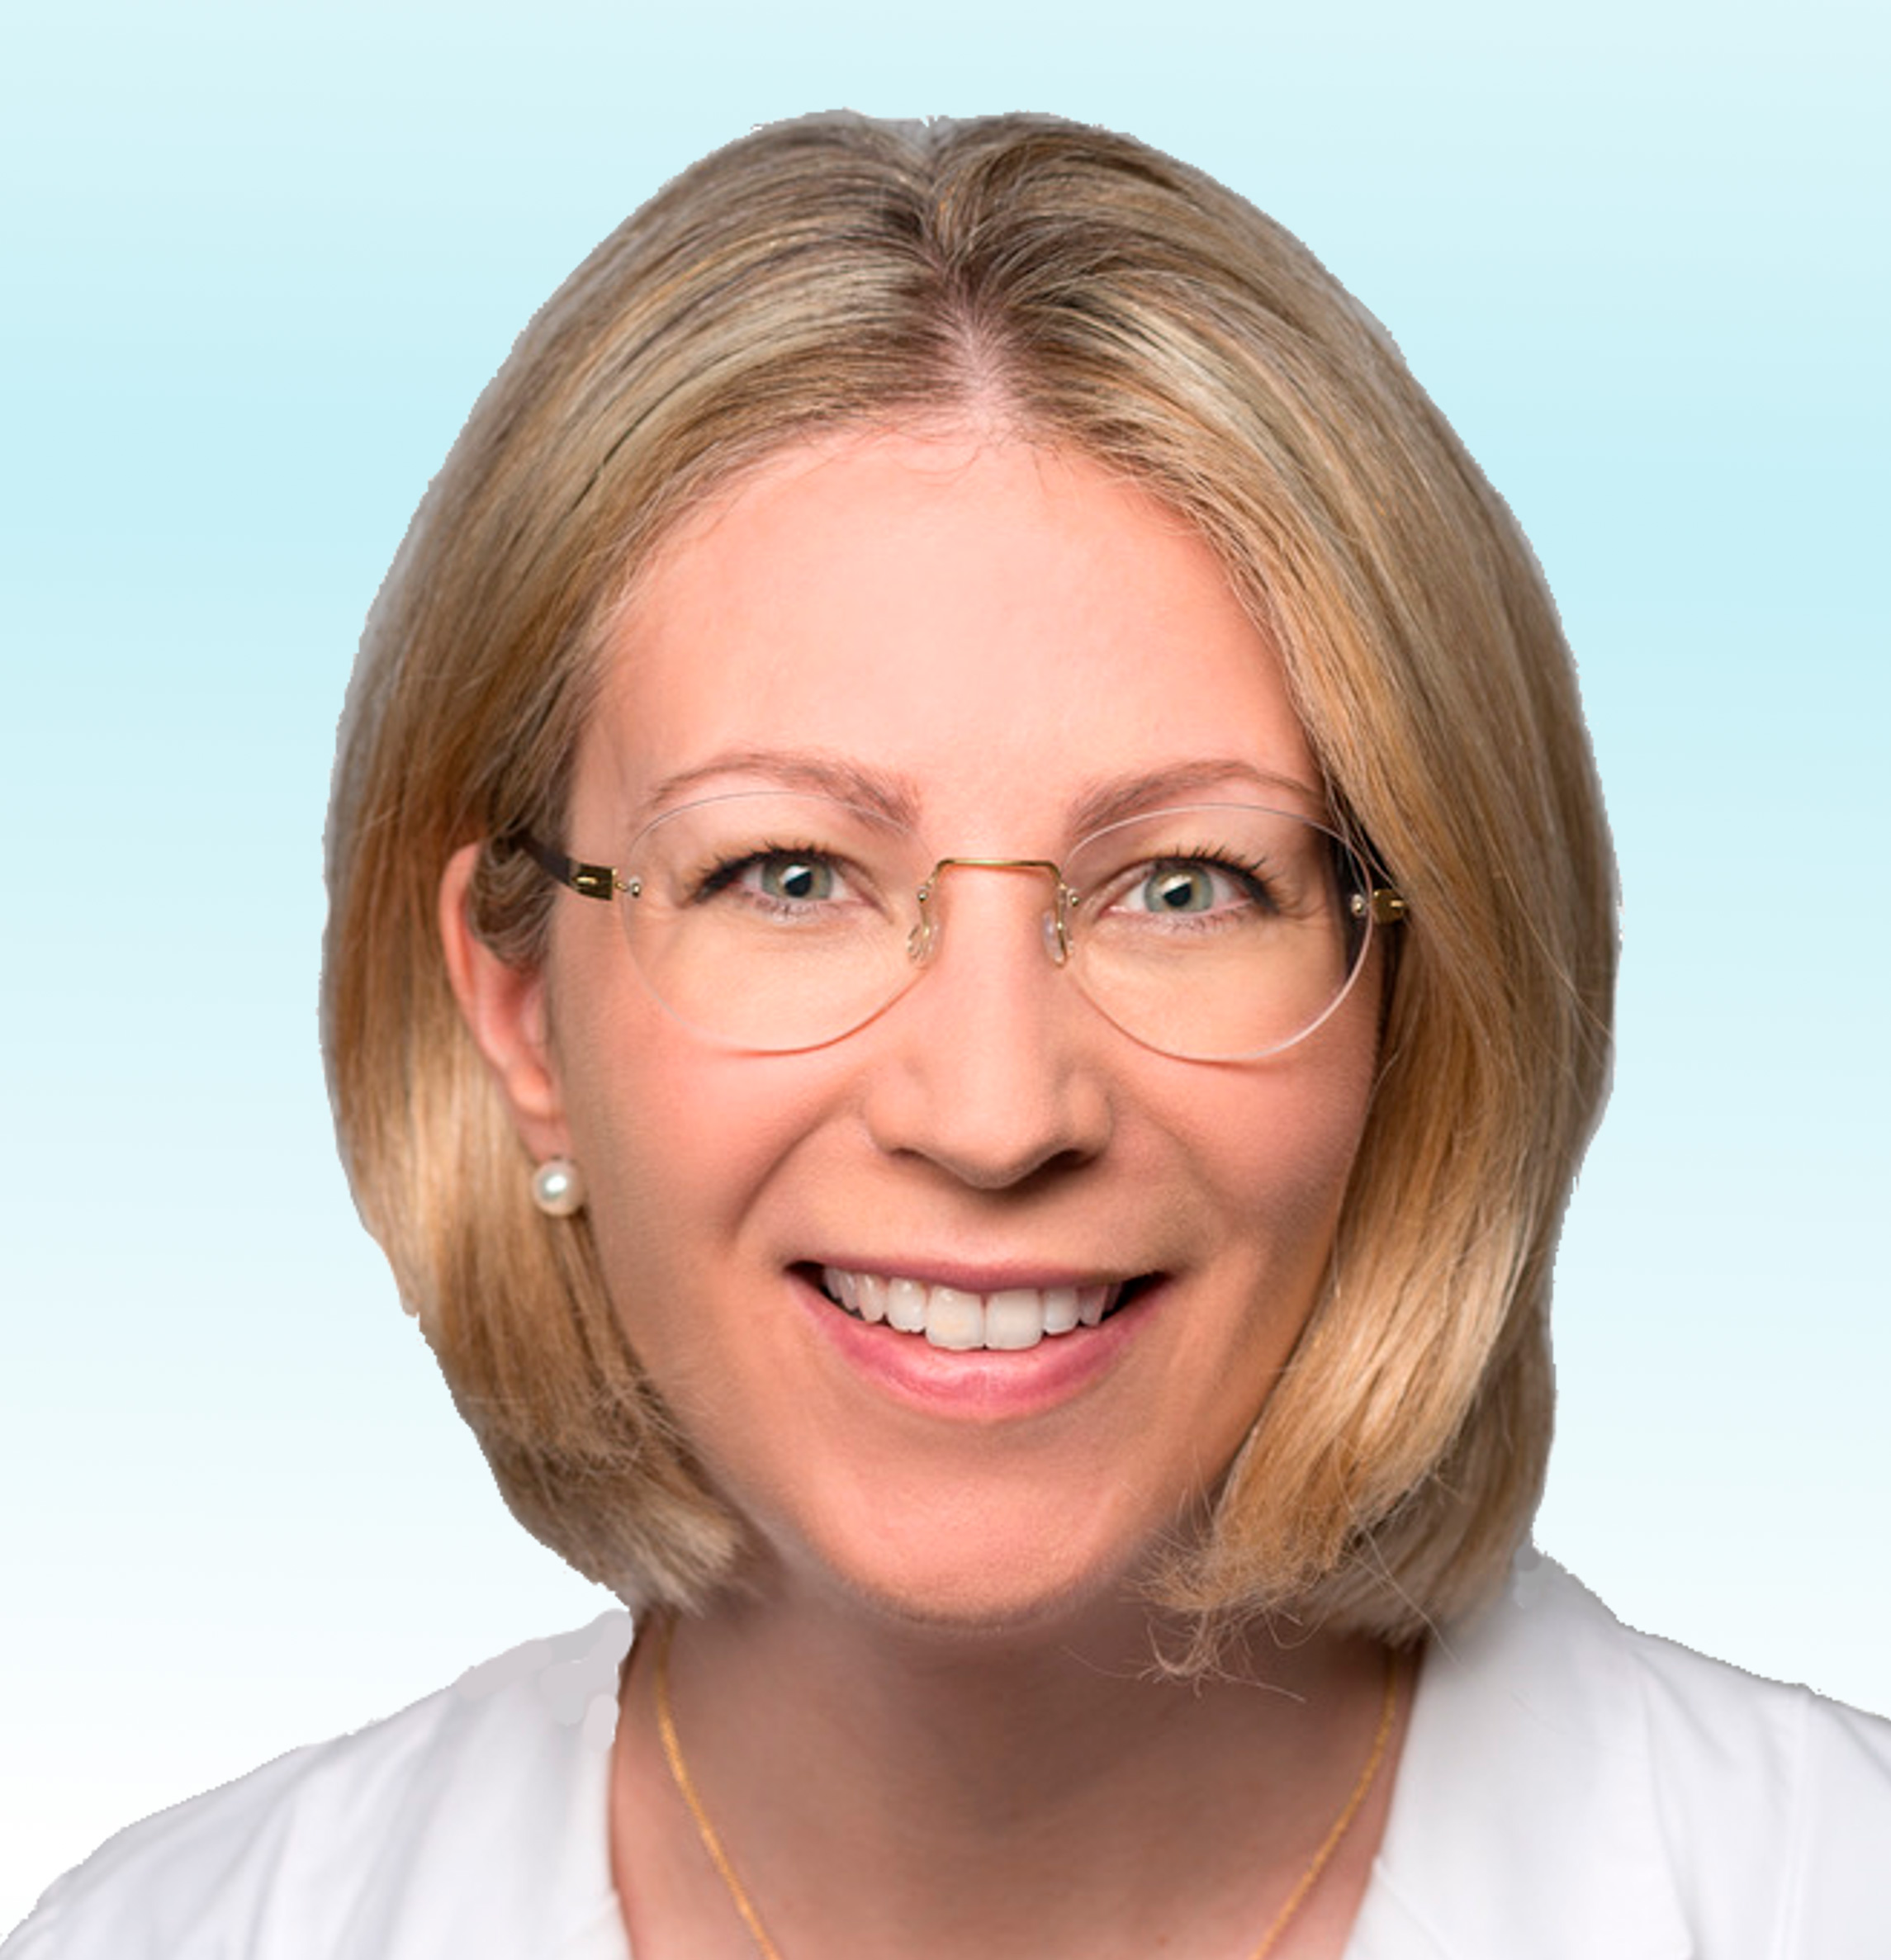 Dermatologo, Dr. med. Michela Corti